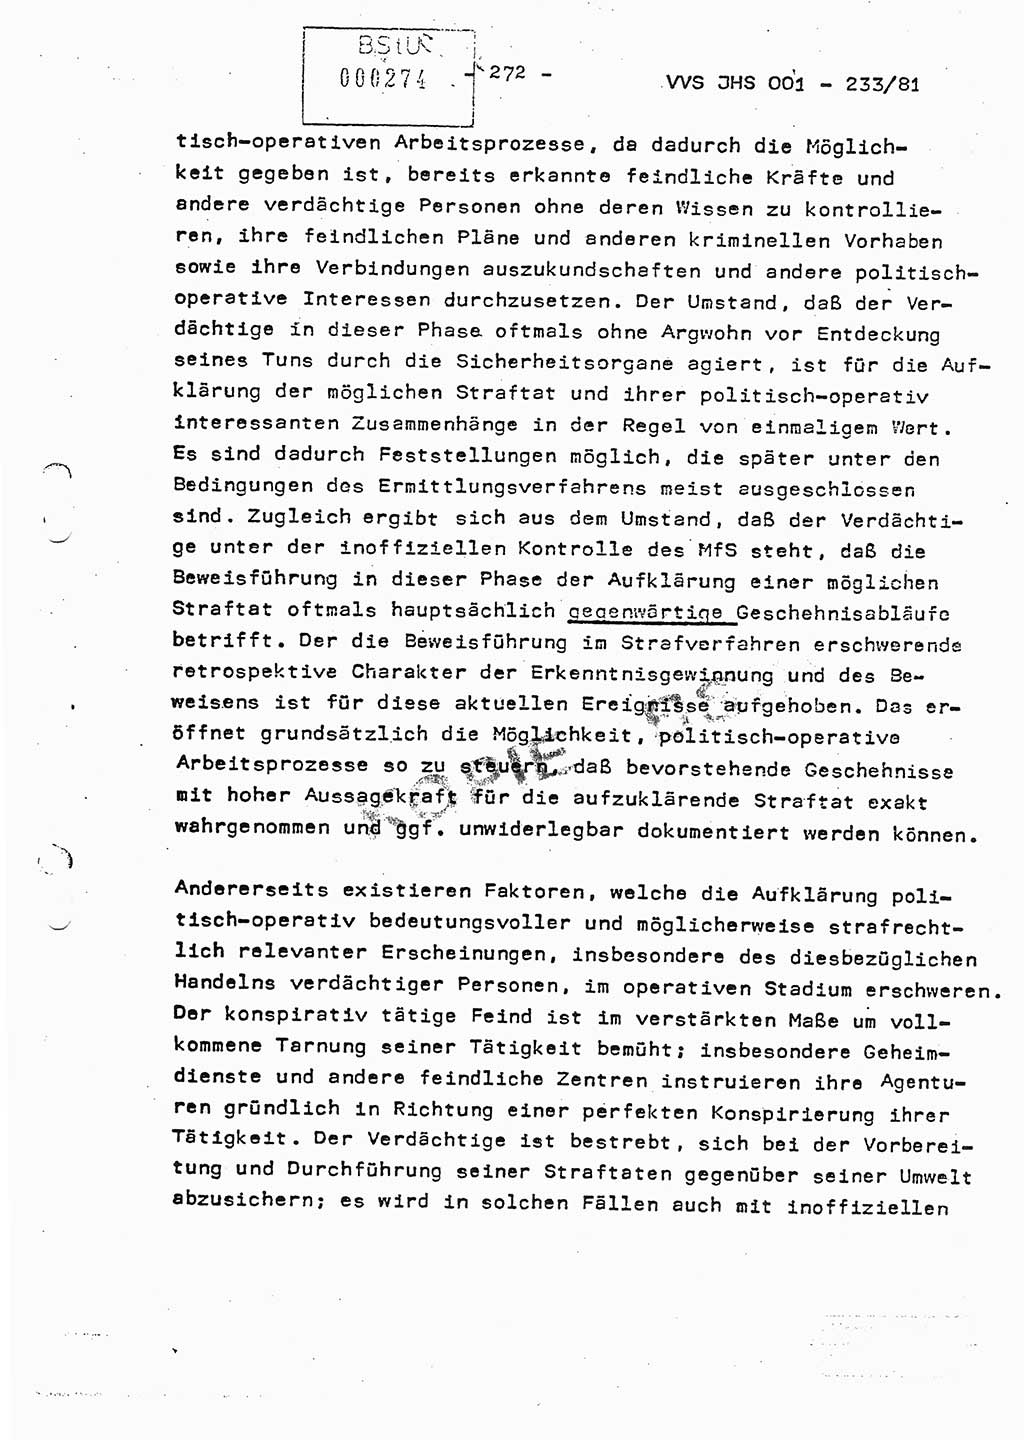 Dissertation Oberstleutnant Horst Zank (JHS), Oberstleutnant Dr. Karl-Heinz Knoblauch (JHS), Oberstleutnant Gustav-Adolf Kowalewski (HA Ⅸ), Oberstleutnant Wolfgang Plötner (HA Ⅸ), Ministerium für Staatssicherheit (MfS) [Deutsche Demokratische Republik (DDR)], Juristische Hochschule (JHS), Vertrauliche Verschlußsache (VVS) o001-233/81, Potsdam 1981, Blatt 272 (Diss. MfS DDR JHS VVS o001-233/81 1981, Bl. 272)